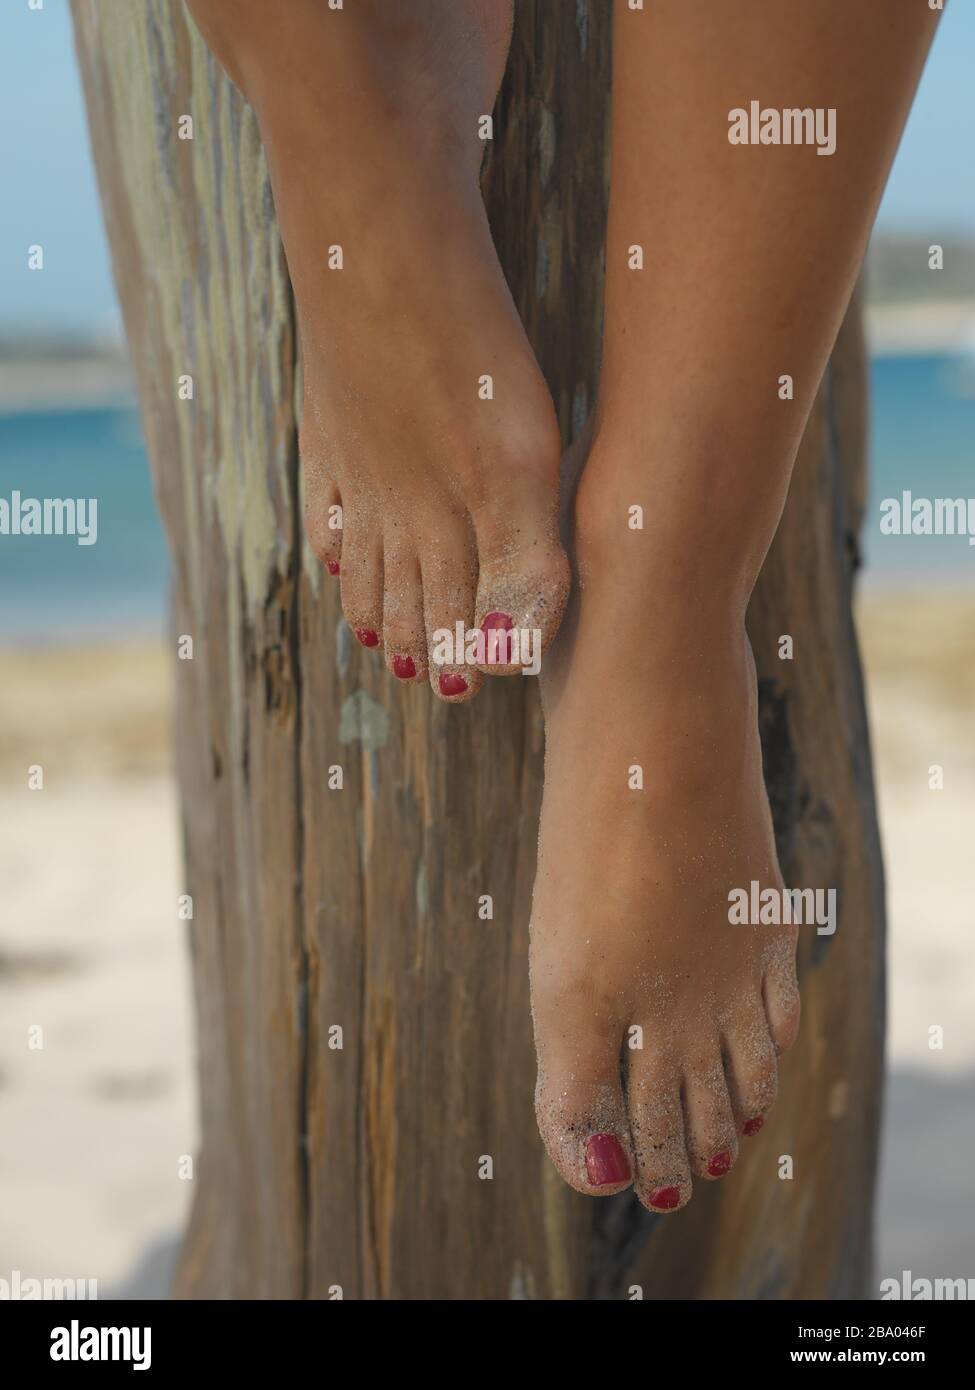 Pies descalzos con clavos pintados en la playa Foto de stock